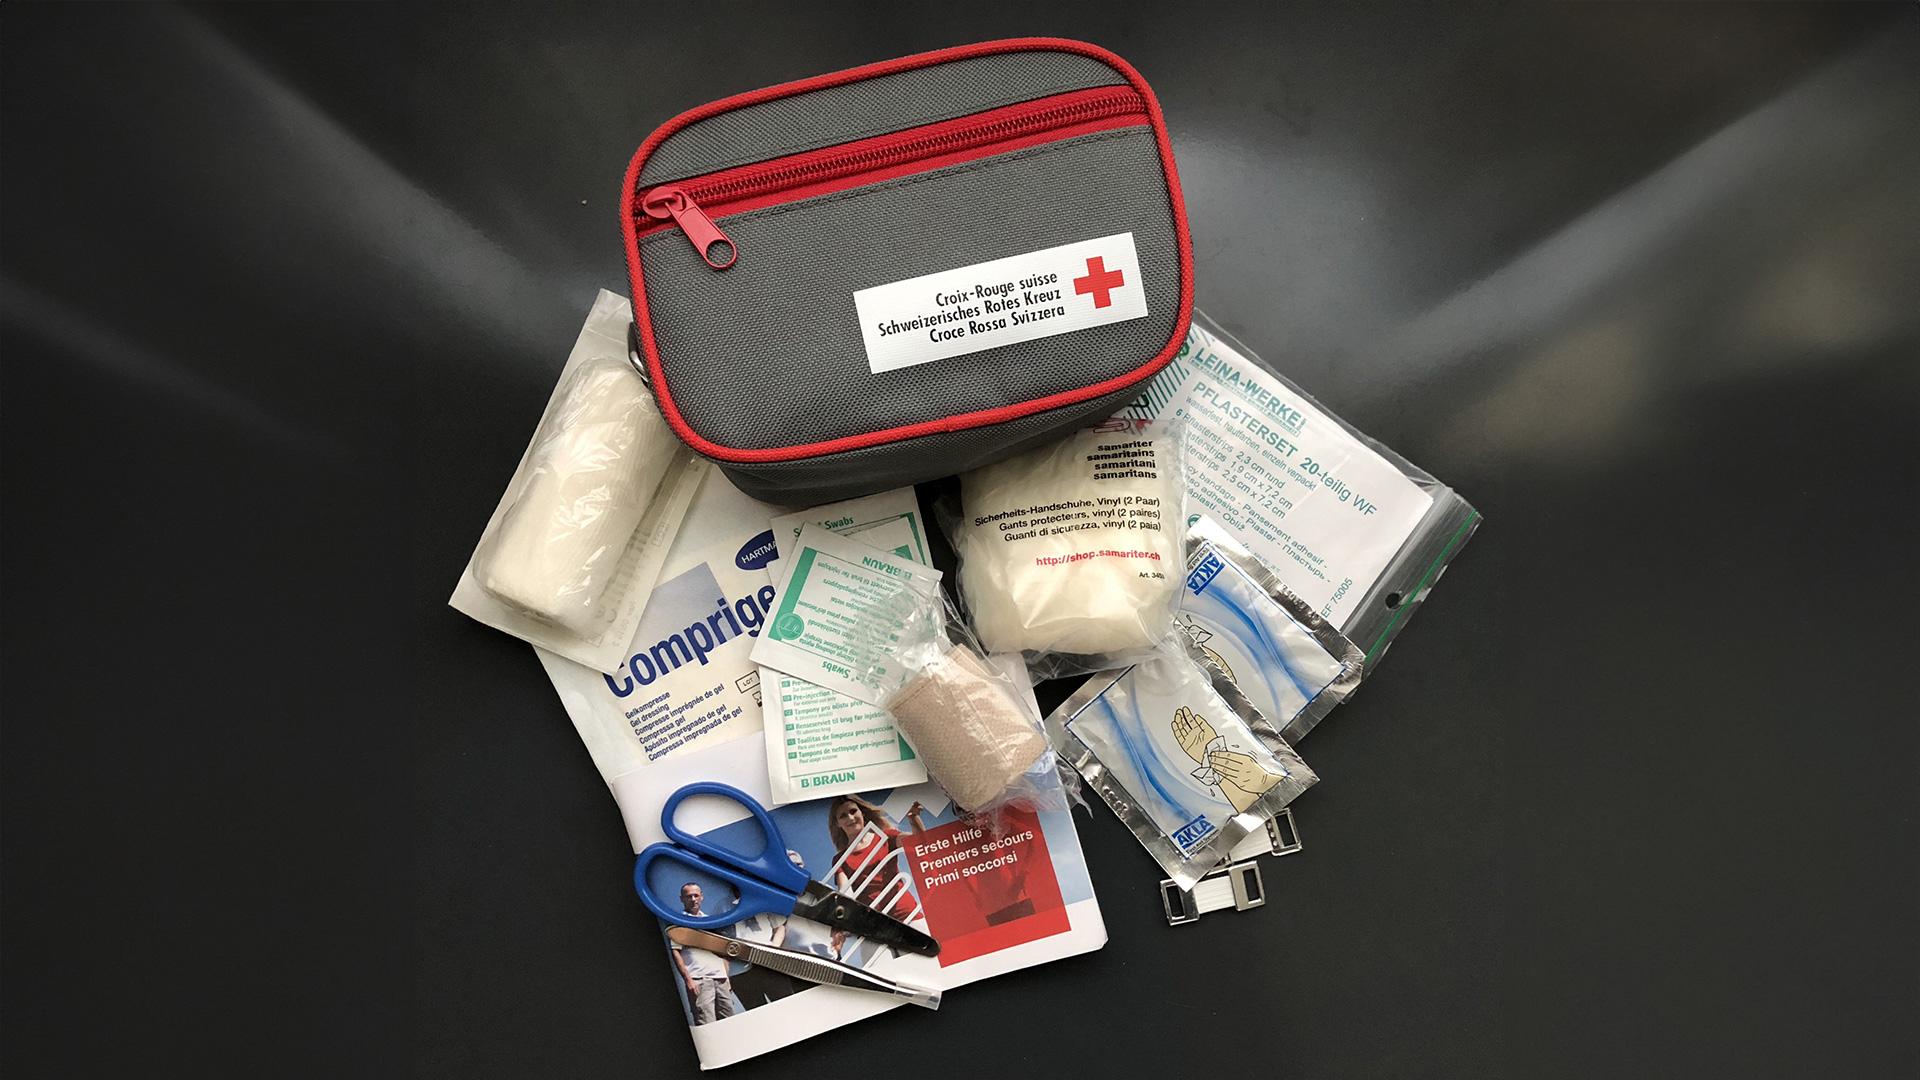 Nothilfeset bestehend aus einer kleinen Tasche mit Verband, Schere, Heftpflaster und weiteren Artikeln für Erste Hilfe. 